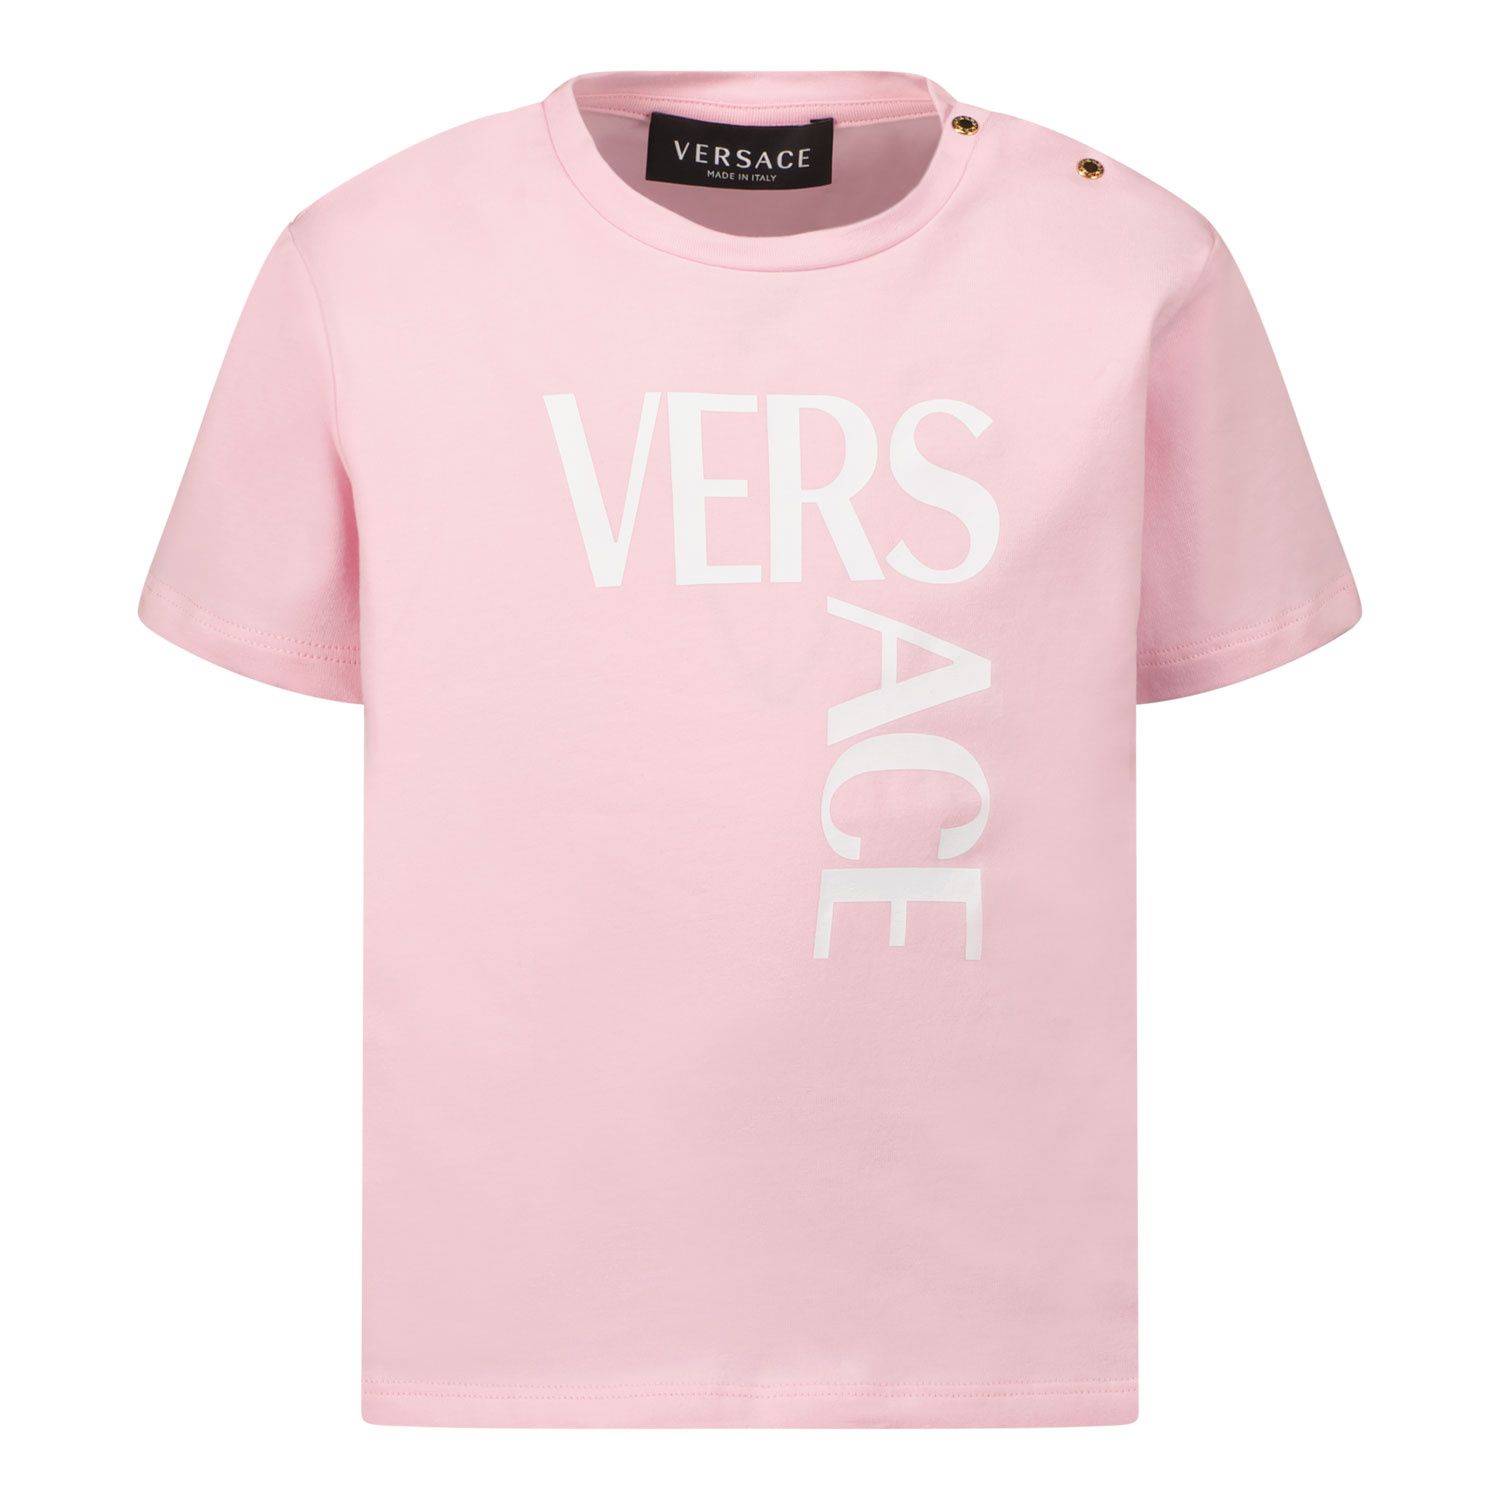 Afbeelding van Versace 1000102 1A01330 baby t-shirt licht roze